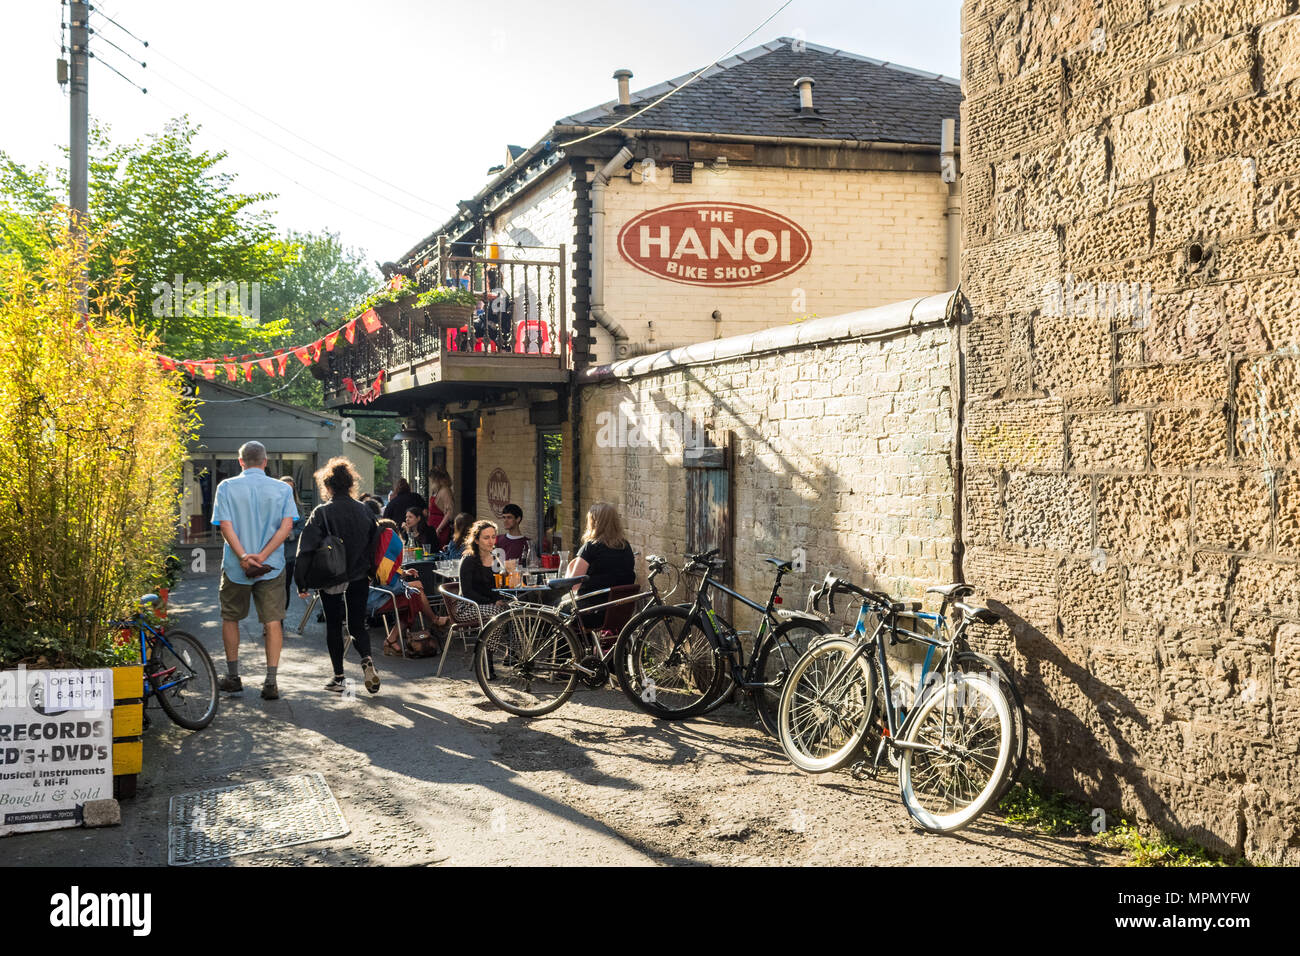 L'Hanoi Bike Shop, Ruthven Lane, West End, Glasgow, Écosse, Royaume-Uni Banque D'Images